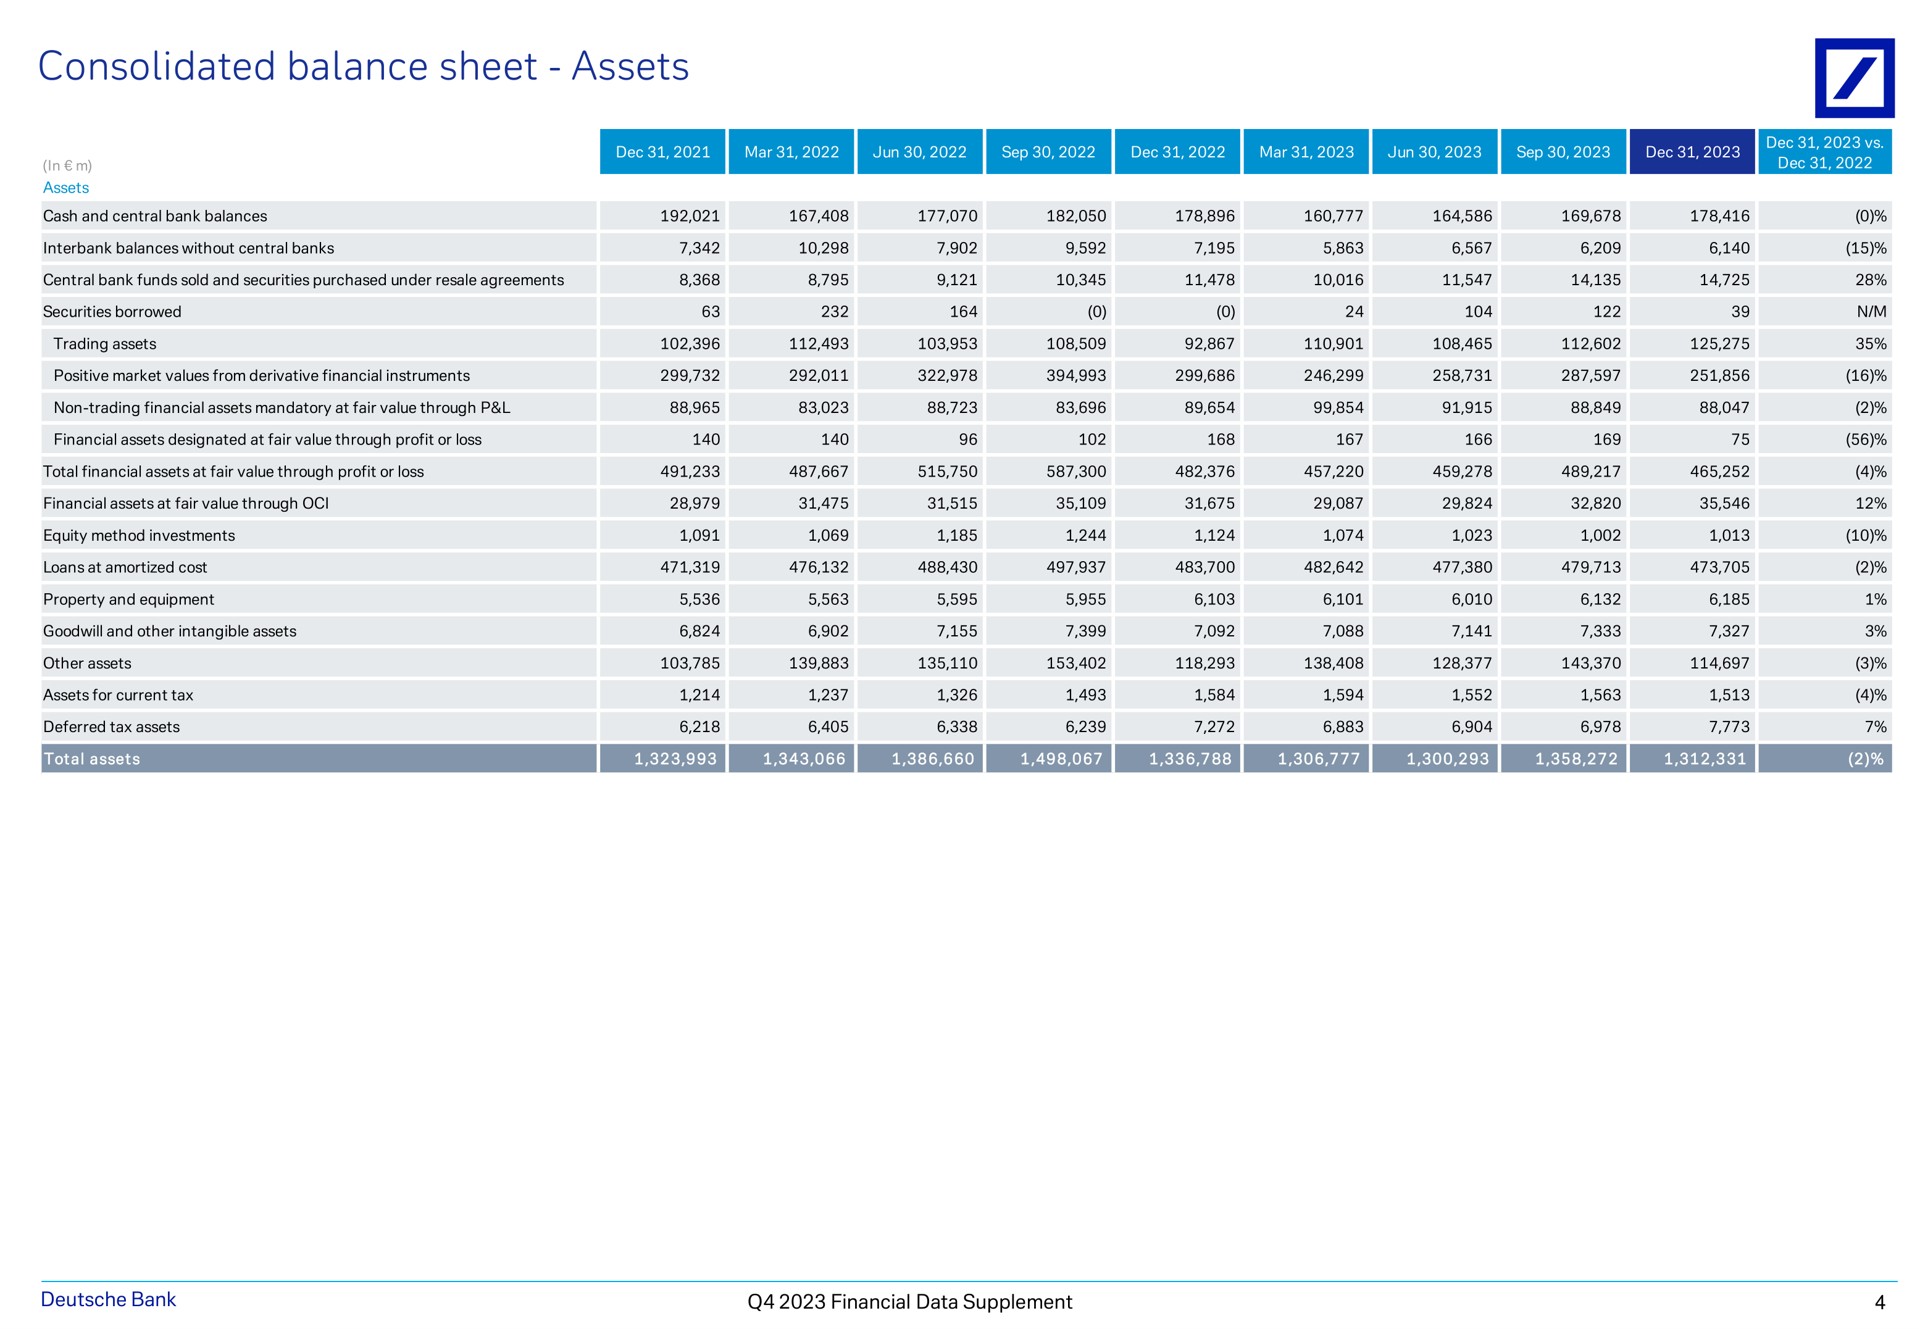 consolidated balance sheet assets financial data supplement | Deutsche Bank